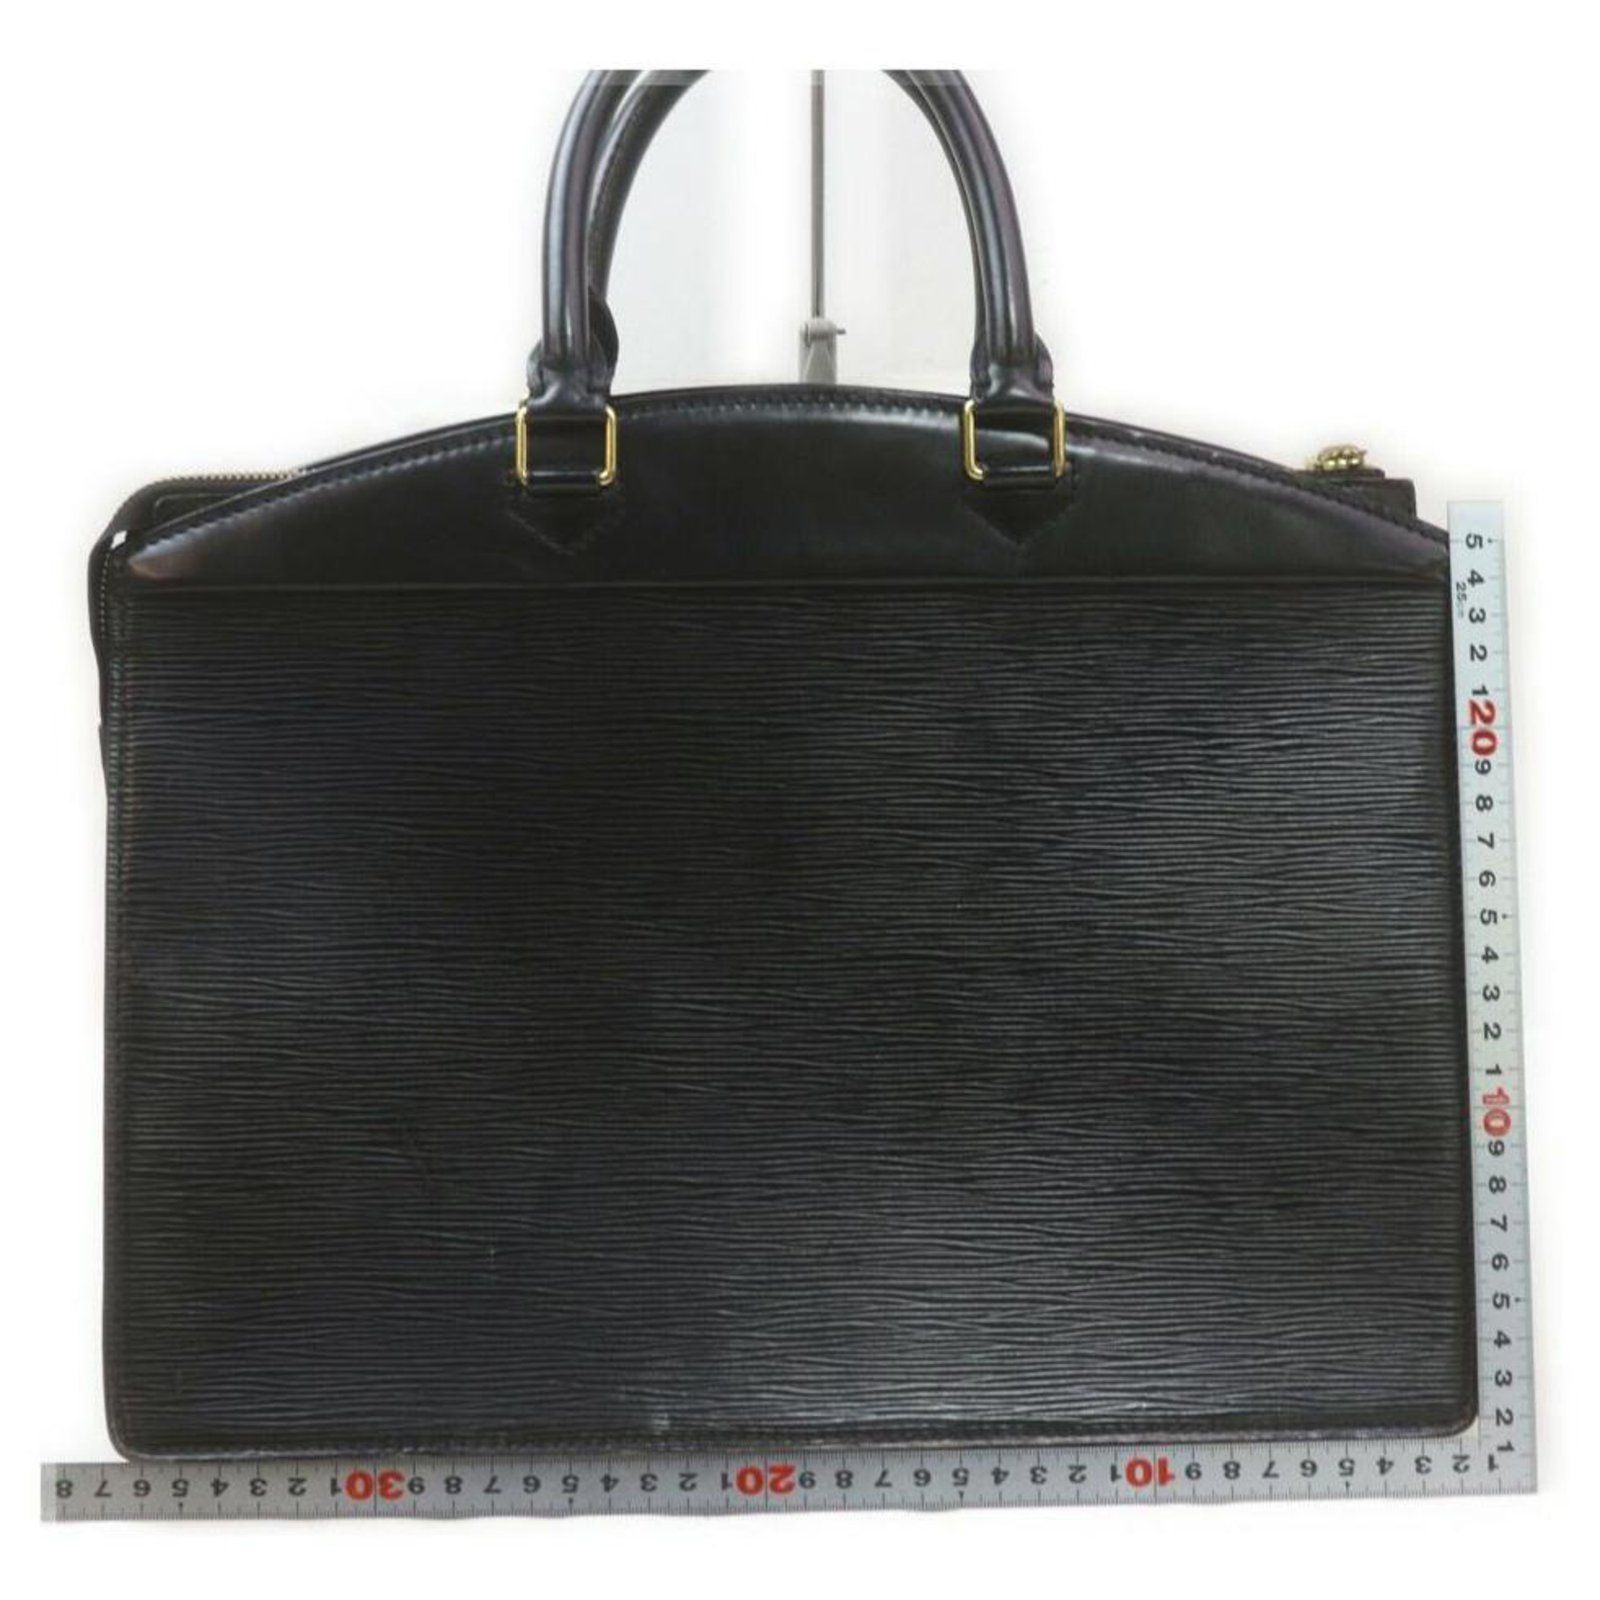 LOUIS VUITTON Black Epi Leather Riviera Satchel Bag